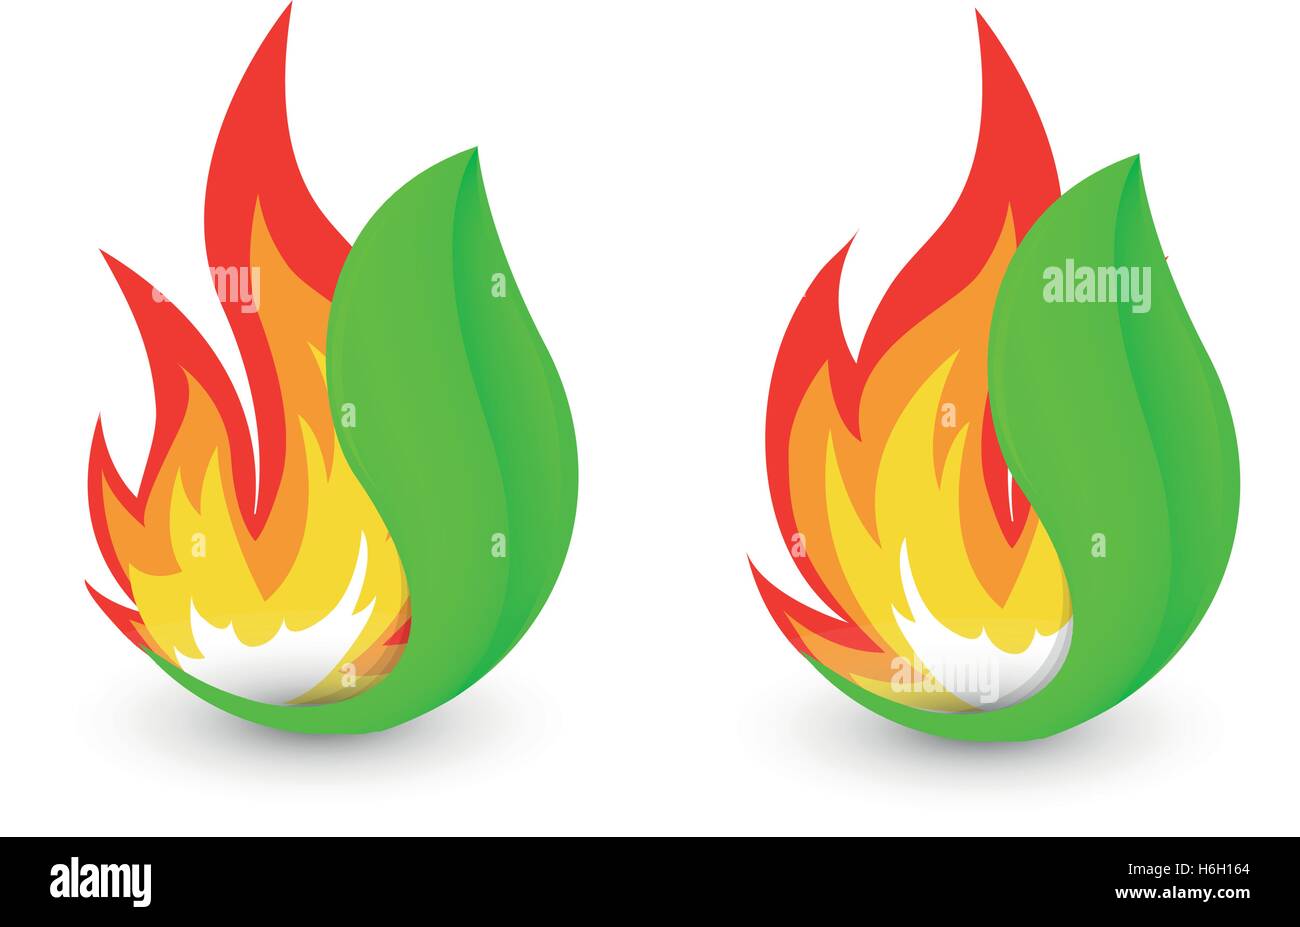 Abstrakte Brand Logo isoliert. Die Flamme im Blatt Logo. Bushfire Symbol. Hitze-Zeichen. Ein Lauffeuer Symbol. Vektor-Illustration. Stock Vektor